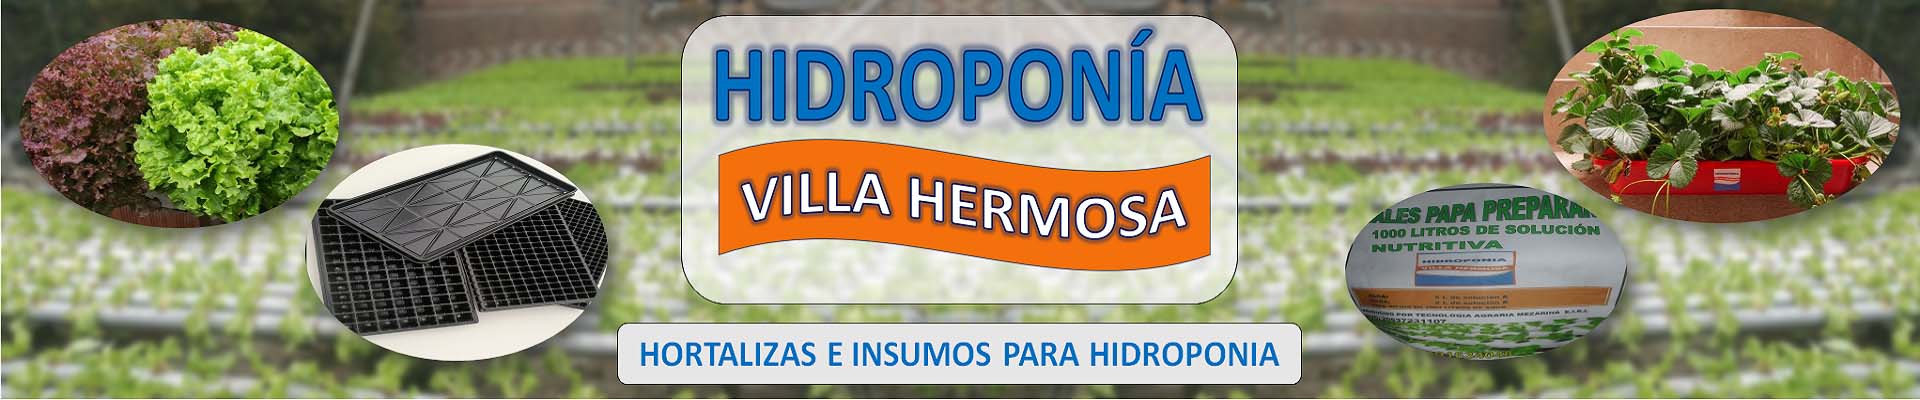 Hidroponía Villa Hermosa